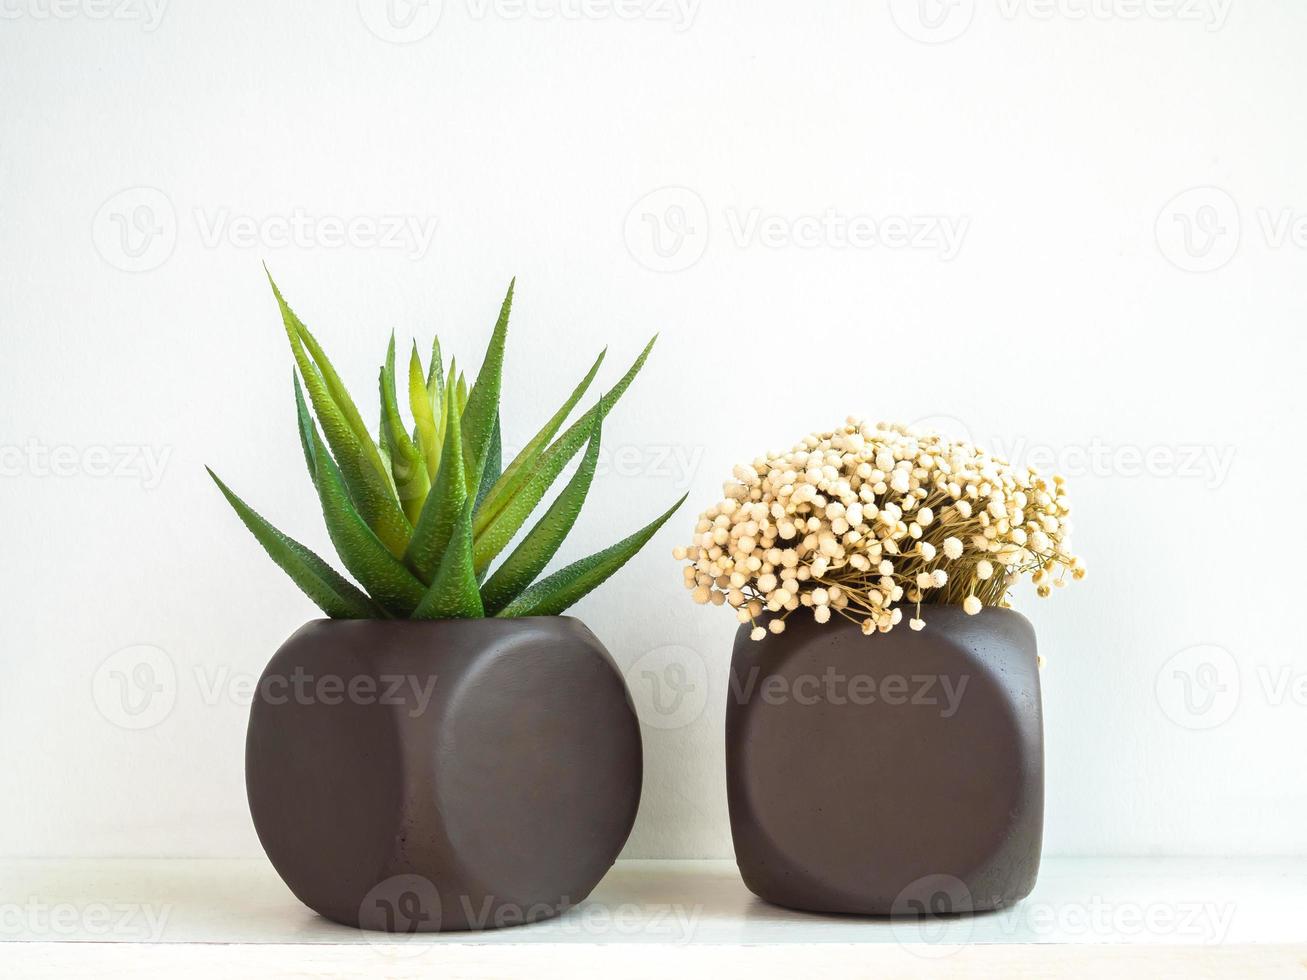 due fioriere in cemento geometrico dipinte di marrone con pianta succulenta e fiore. vasi in cemento dipinto per la decorazione domestica foto